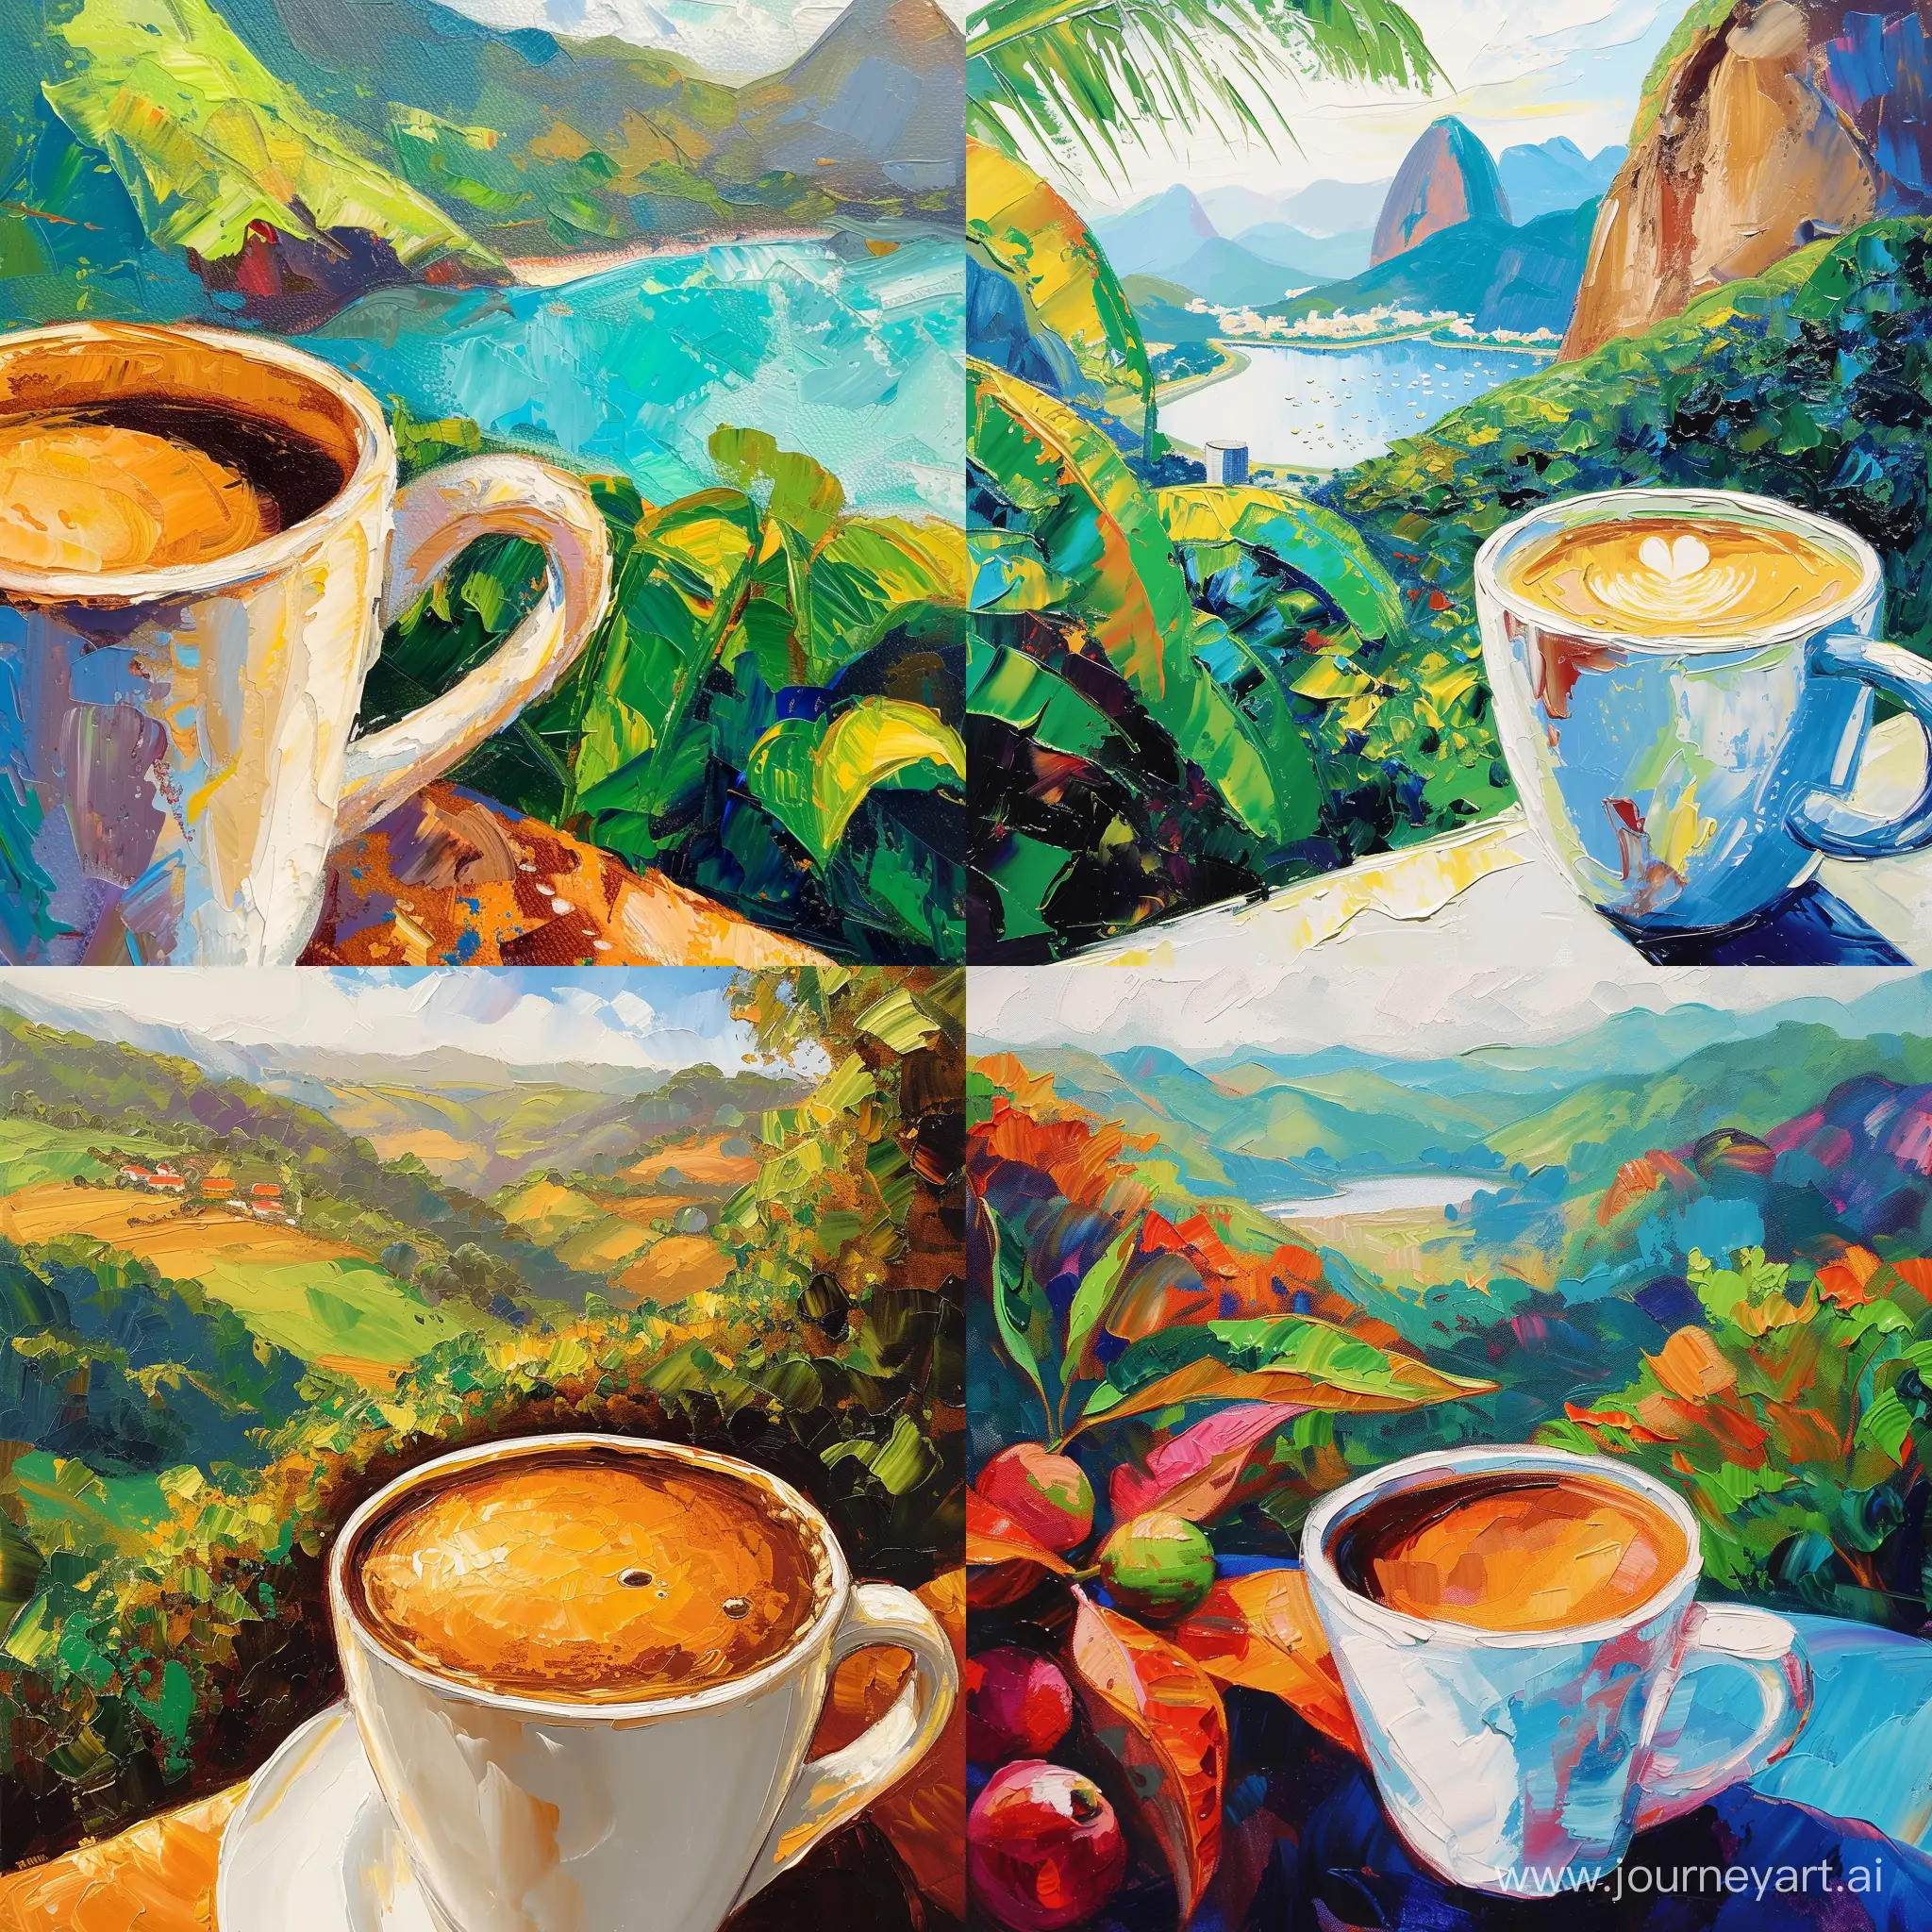 картина в стиле импрессионизм, близко стоит горячая чашка кофе, на заднем плане бразильский пейзаж, яркий и сочный